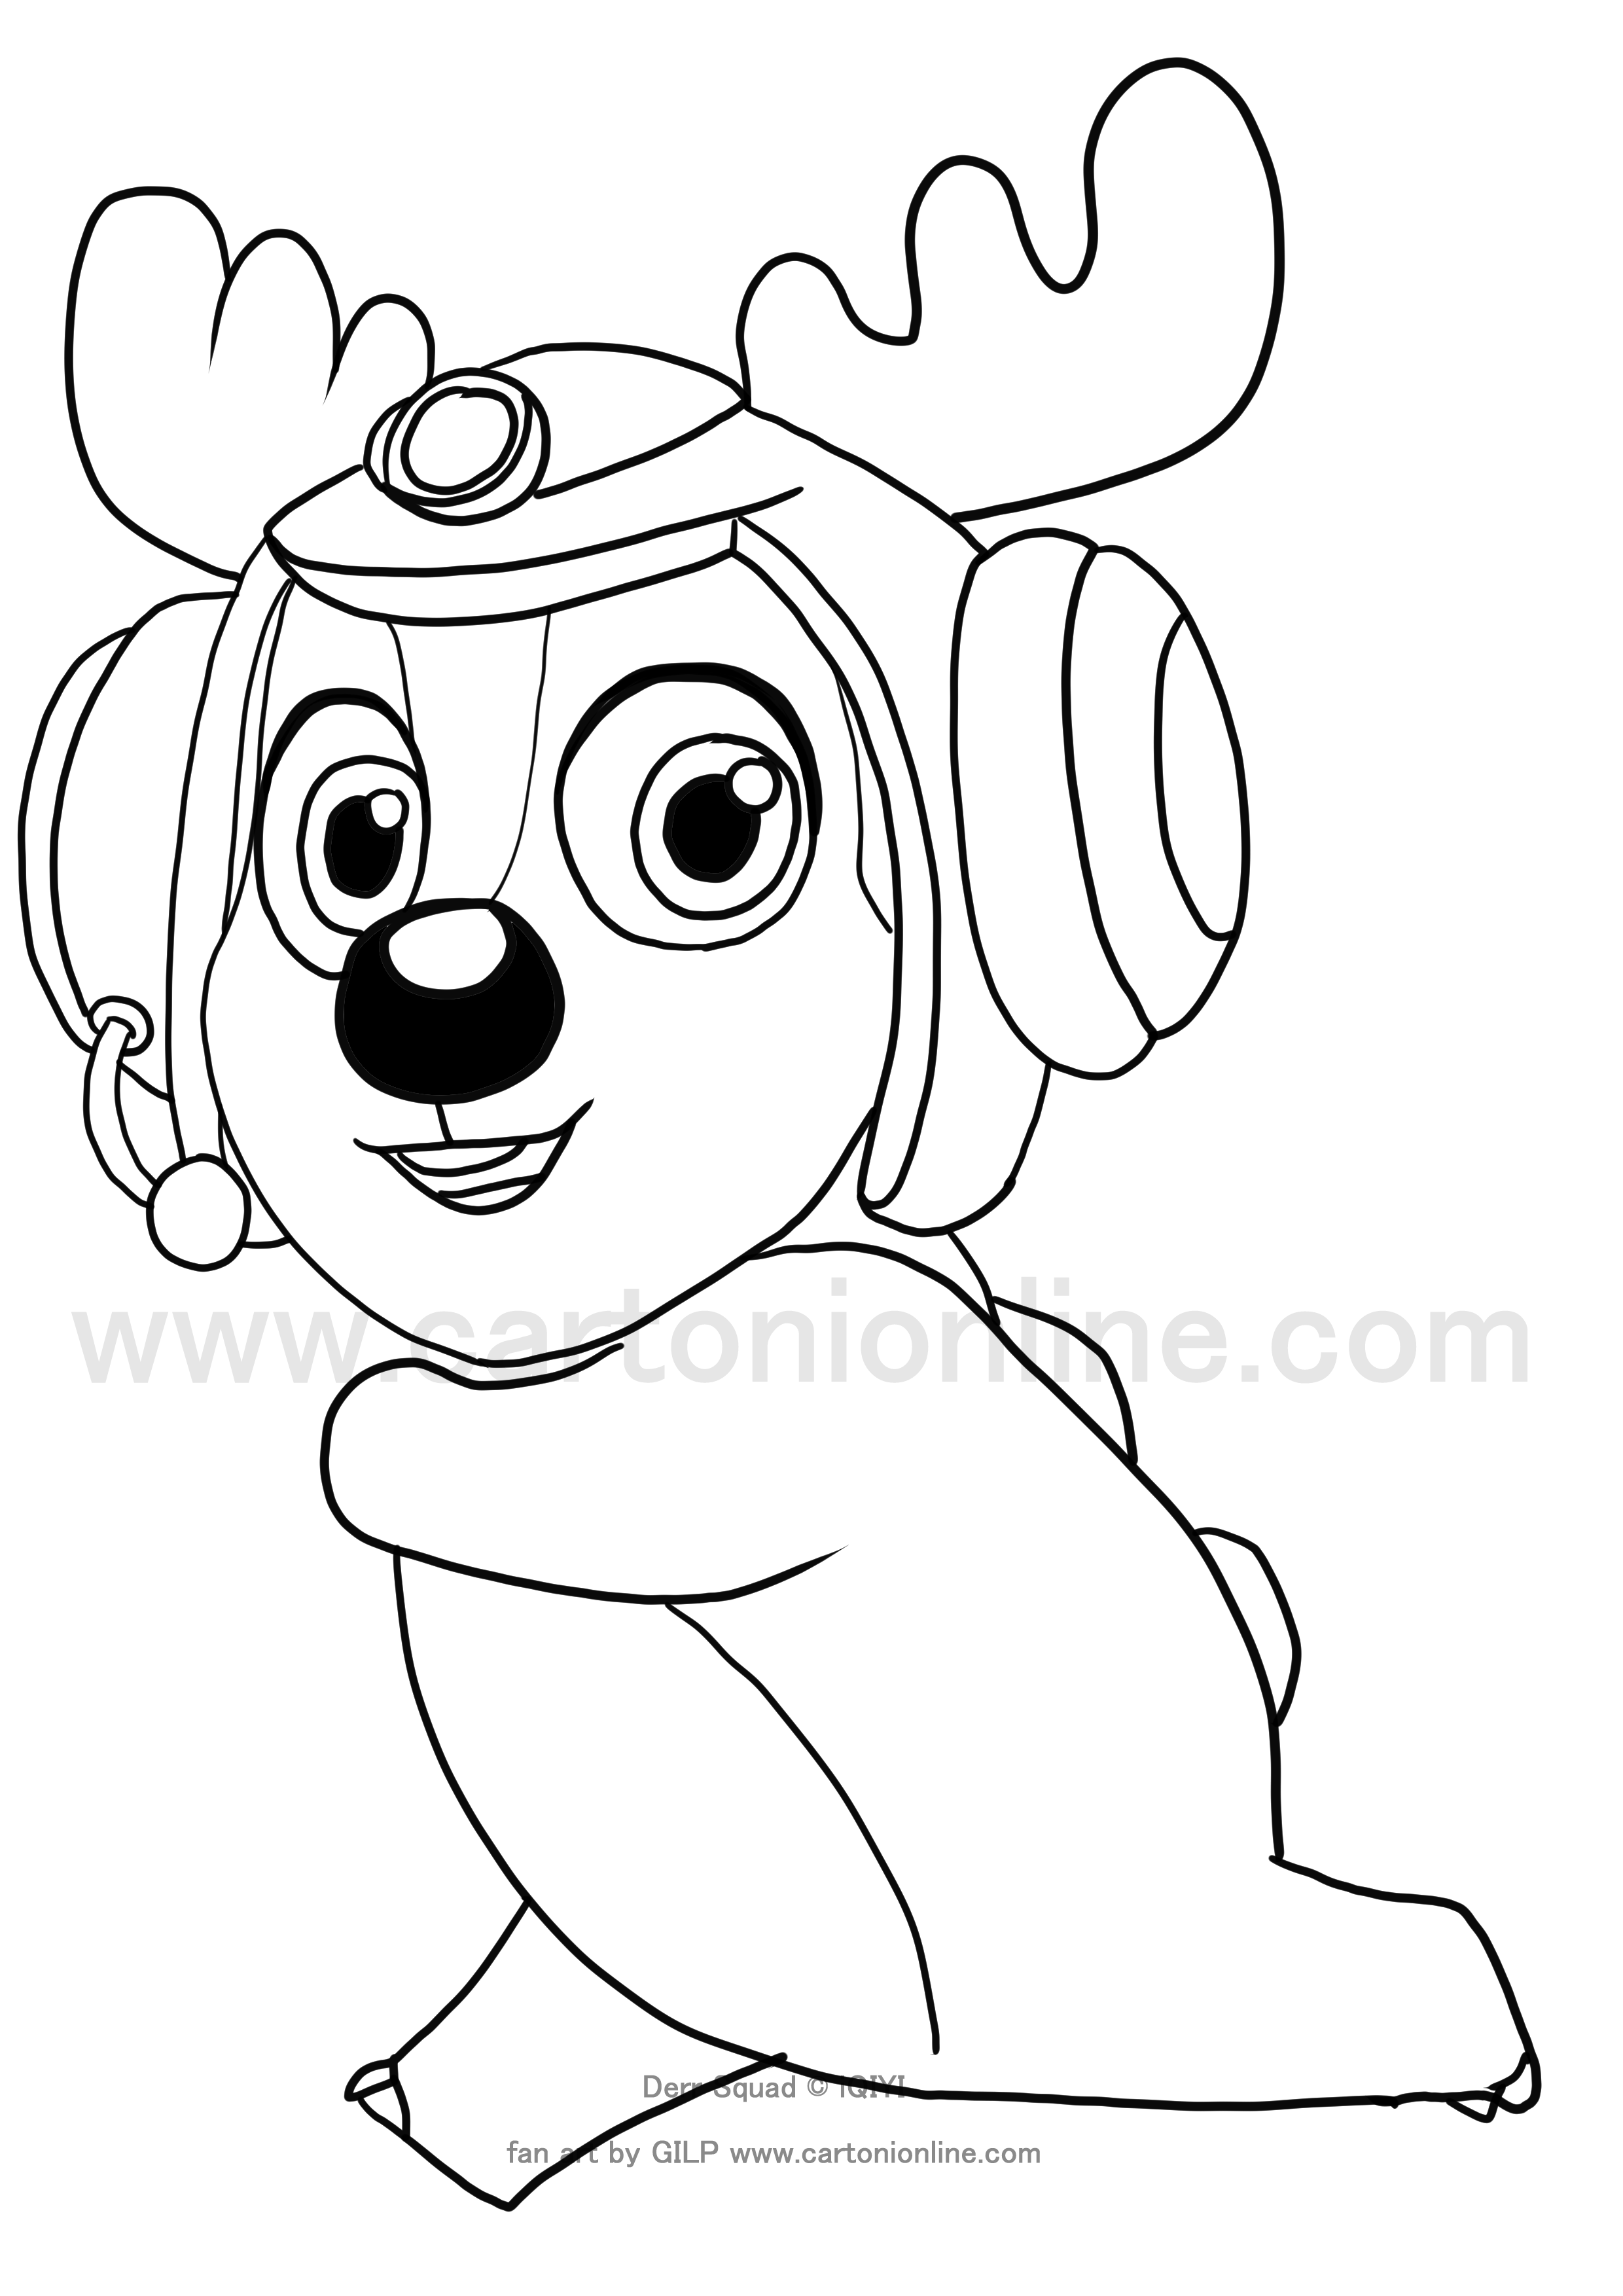 Dibujo de Bobbi de Deer Squad para imprimir y colorear